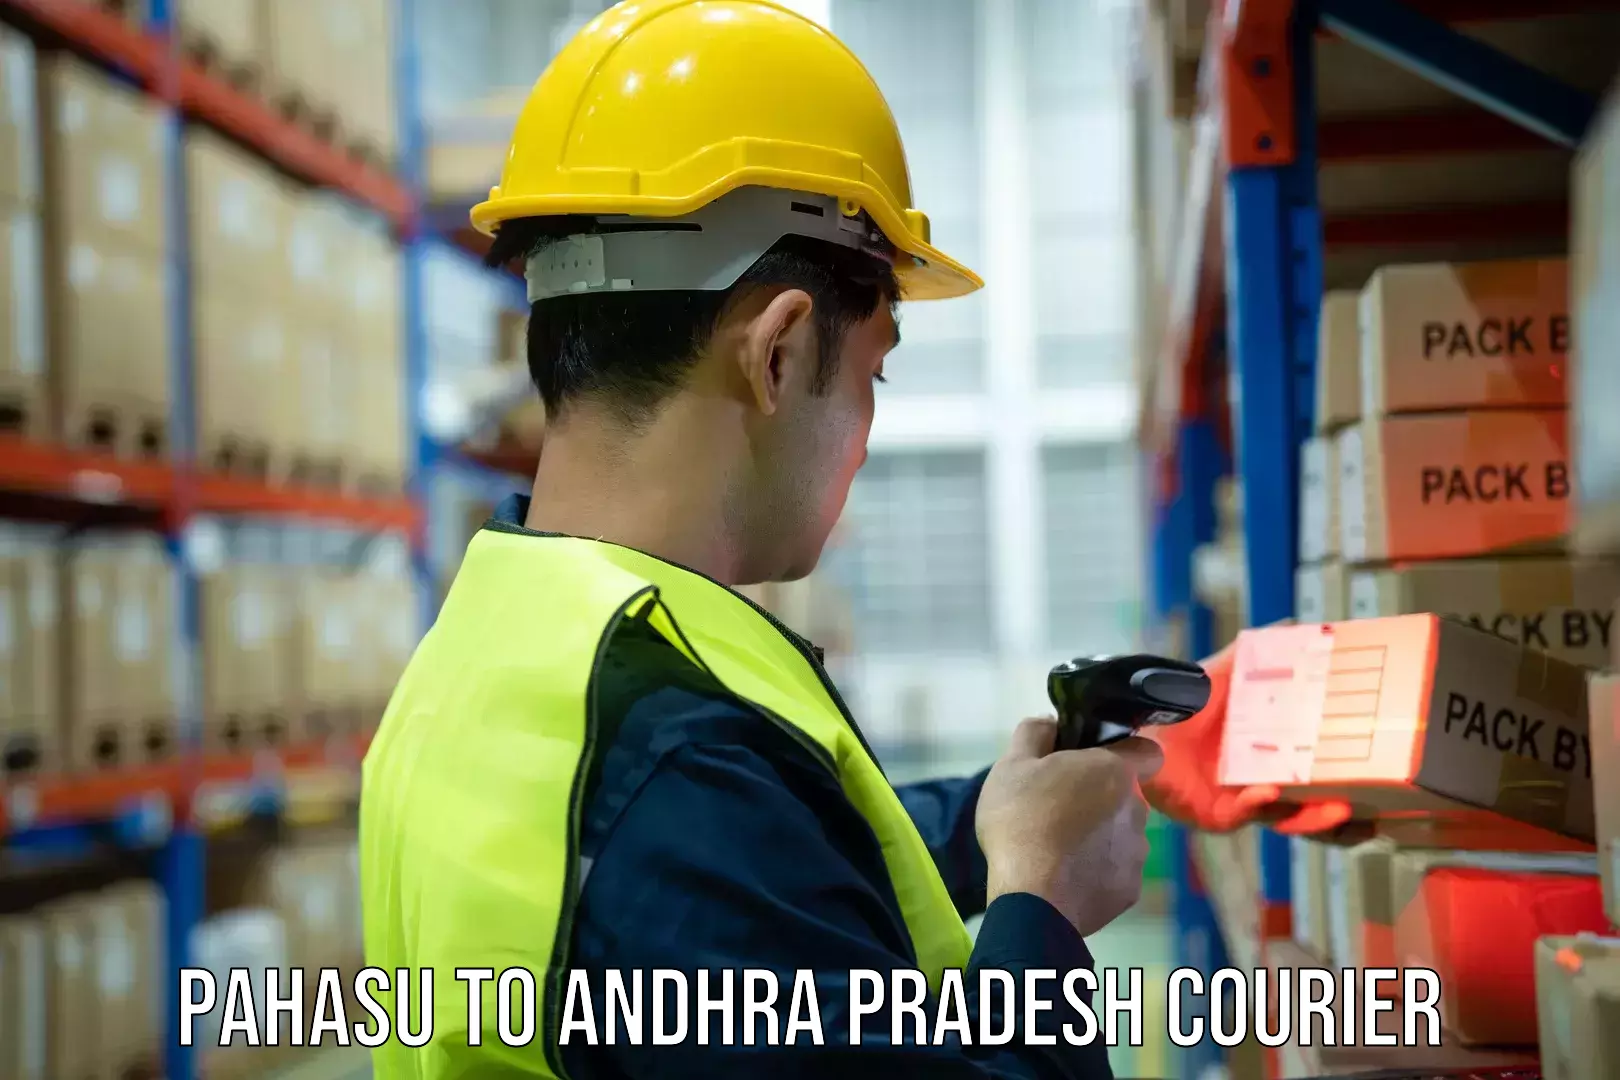 Next-day freight services Pahasu to Andhra Pradesh